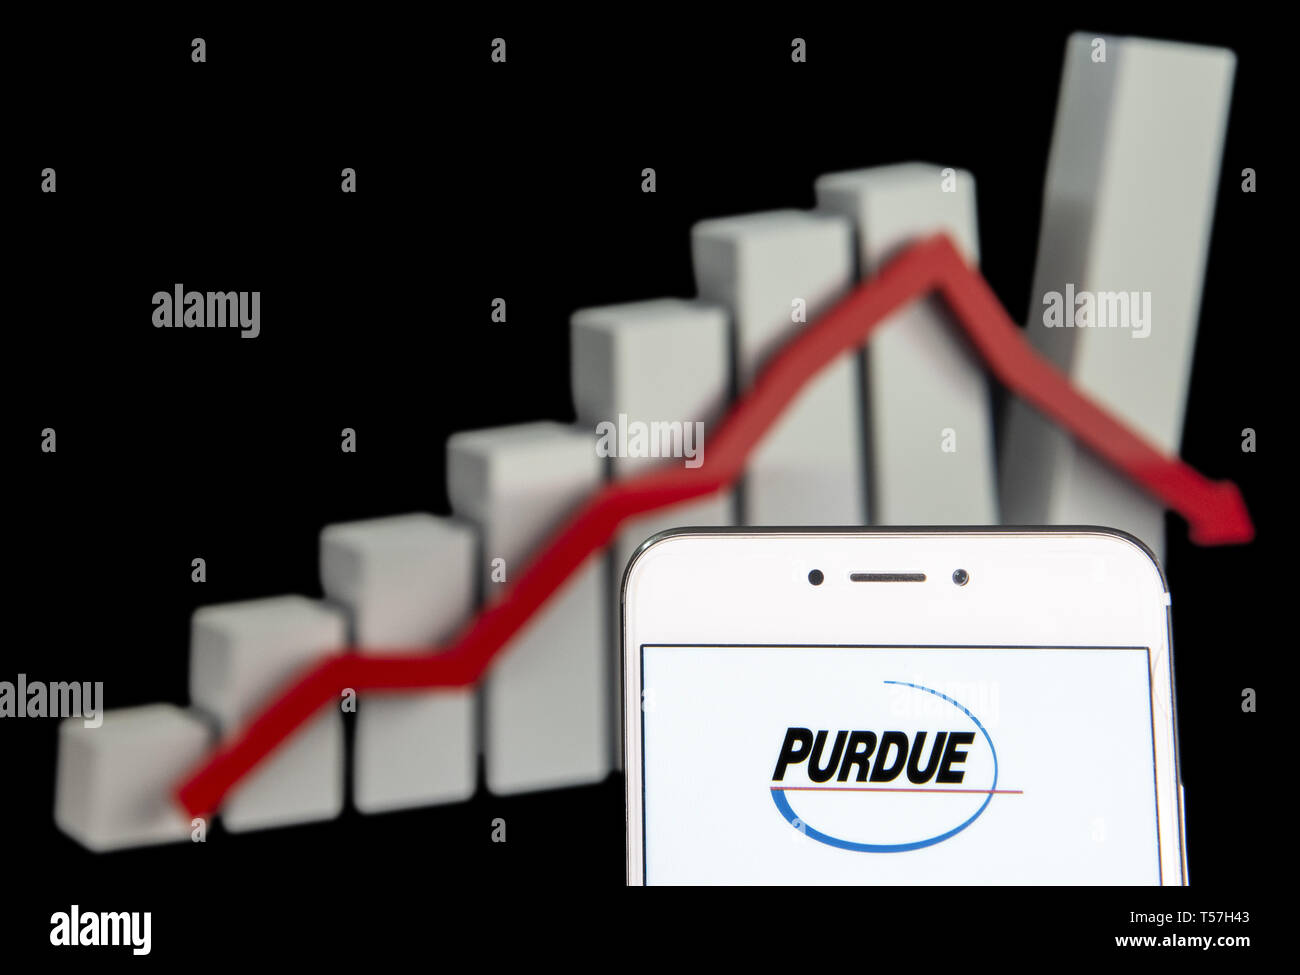 Purdue Pharma Stock Chart